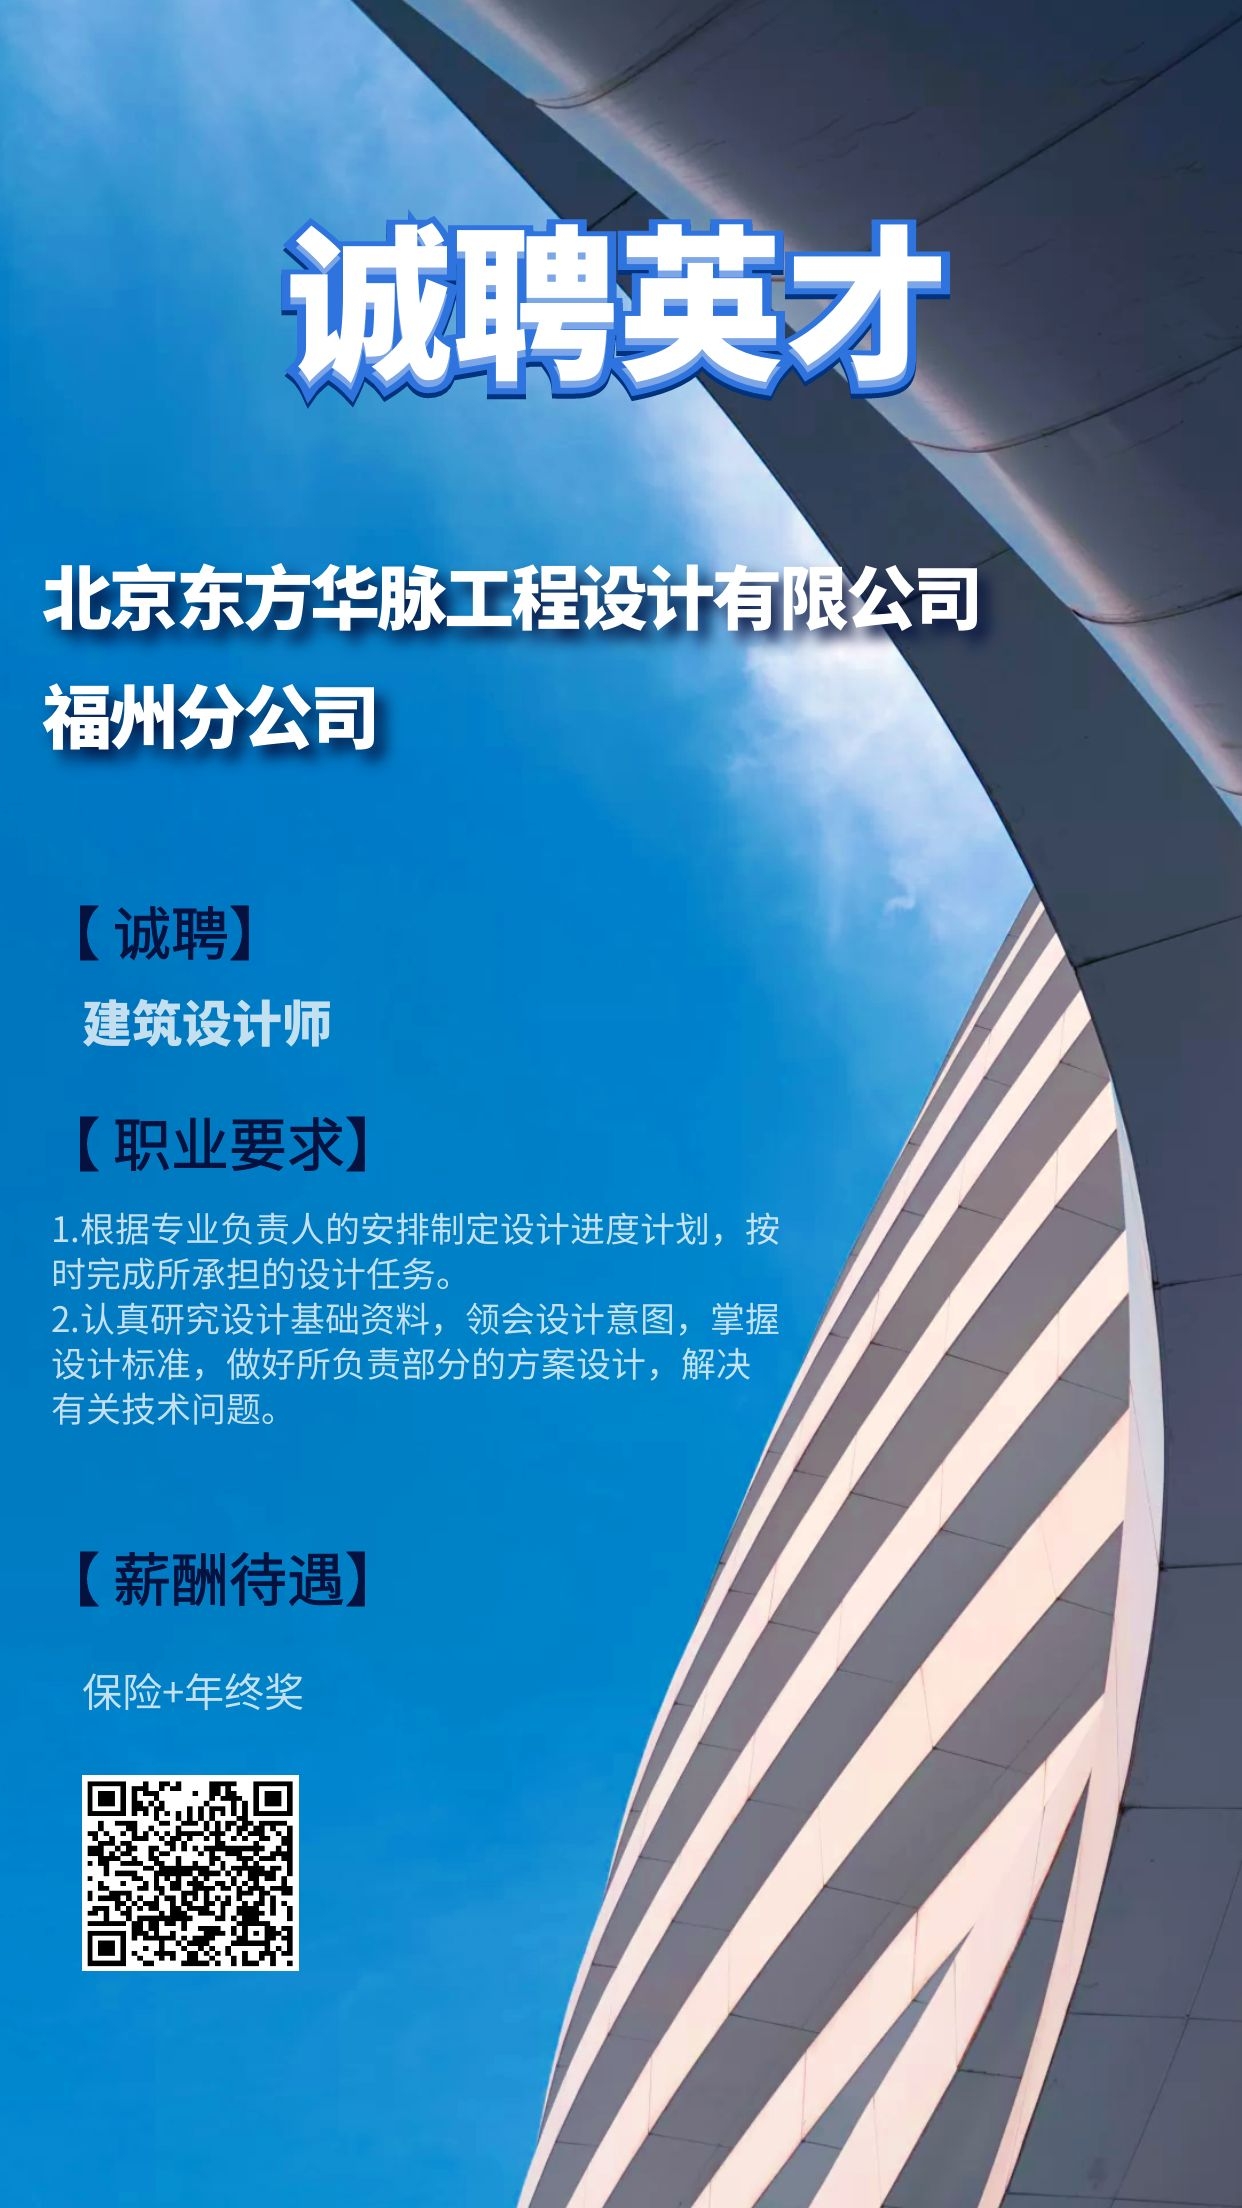 北京东方华脉工程设计有限公司福州分公司